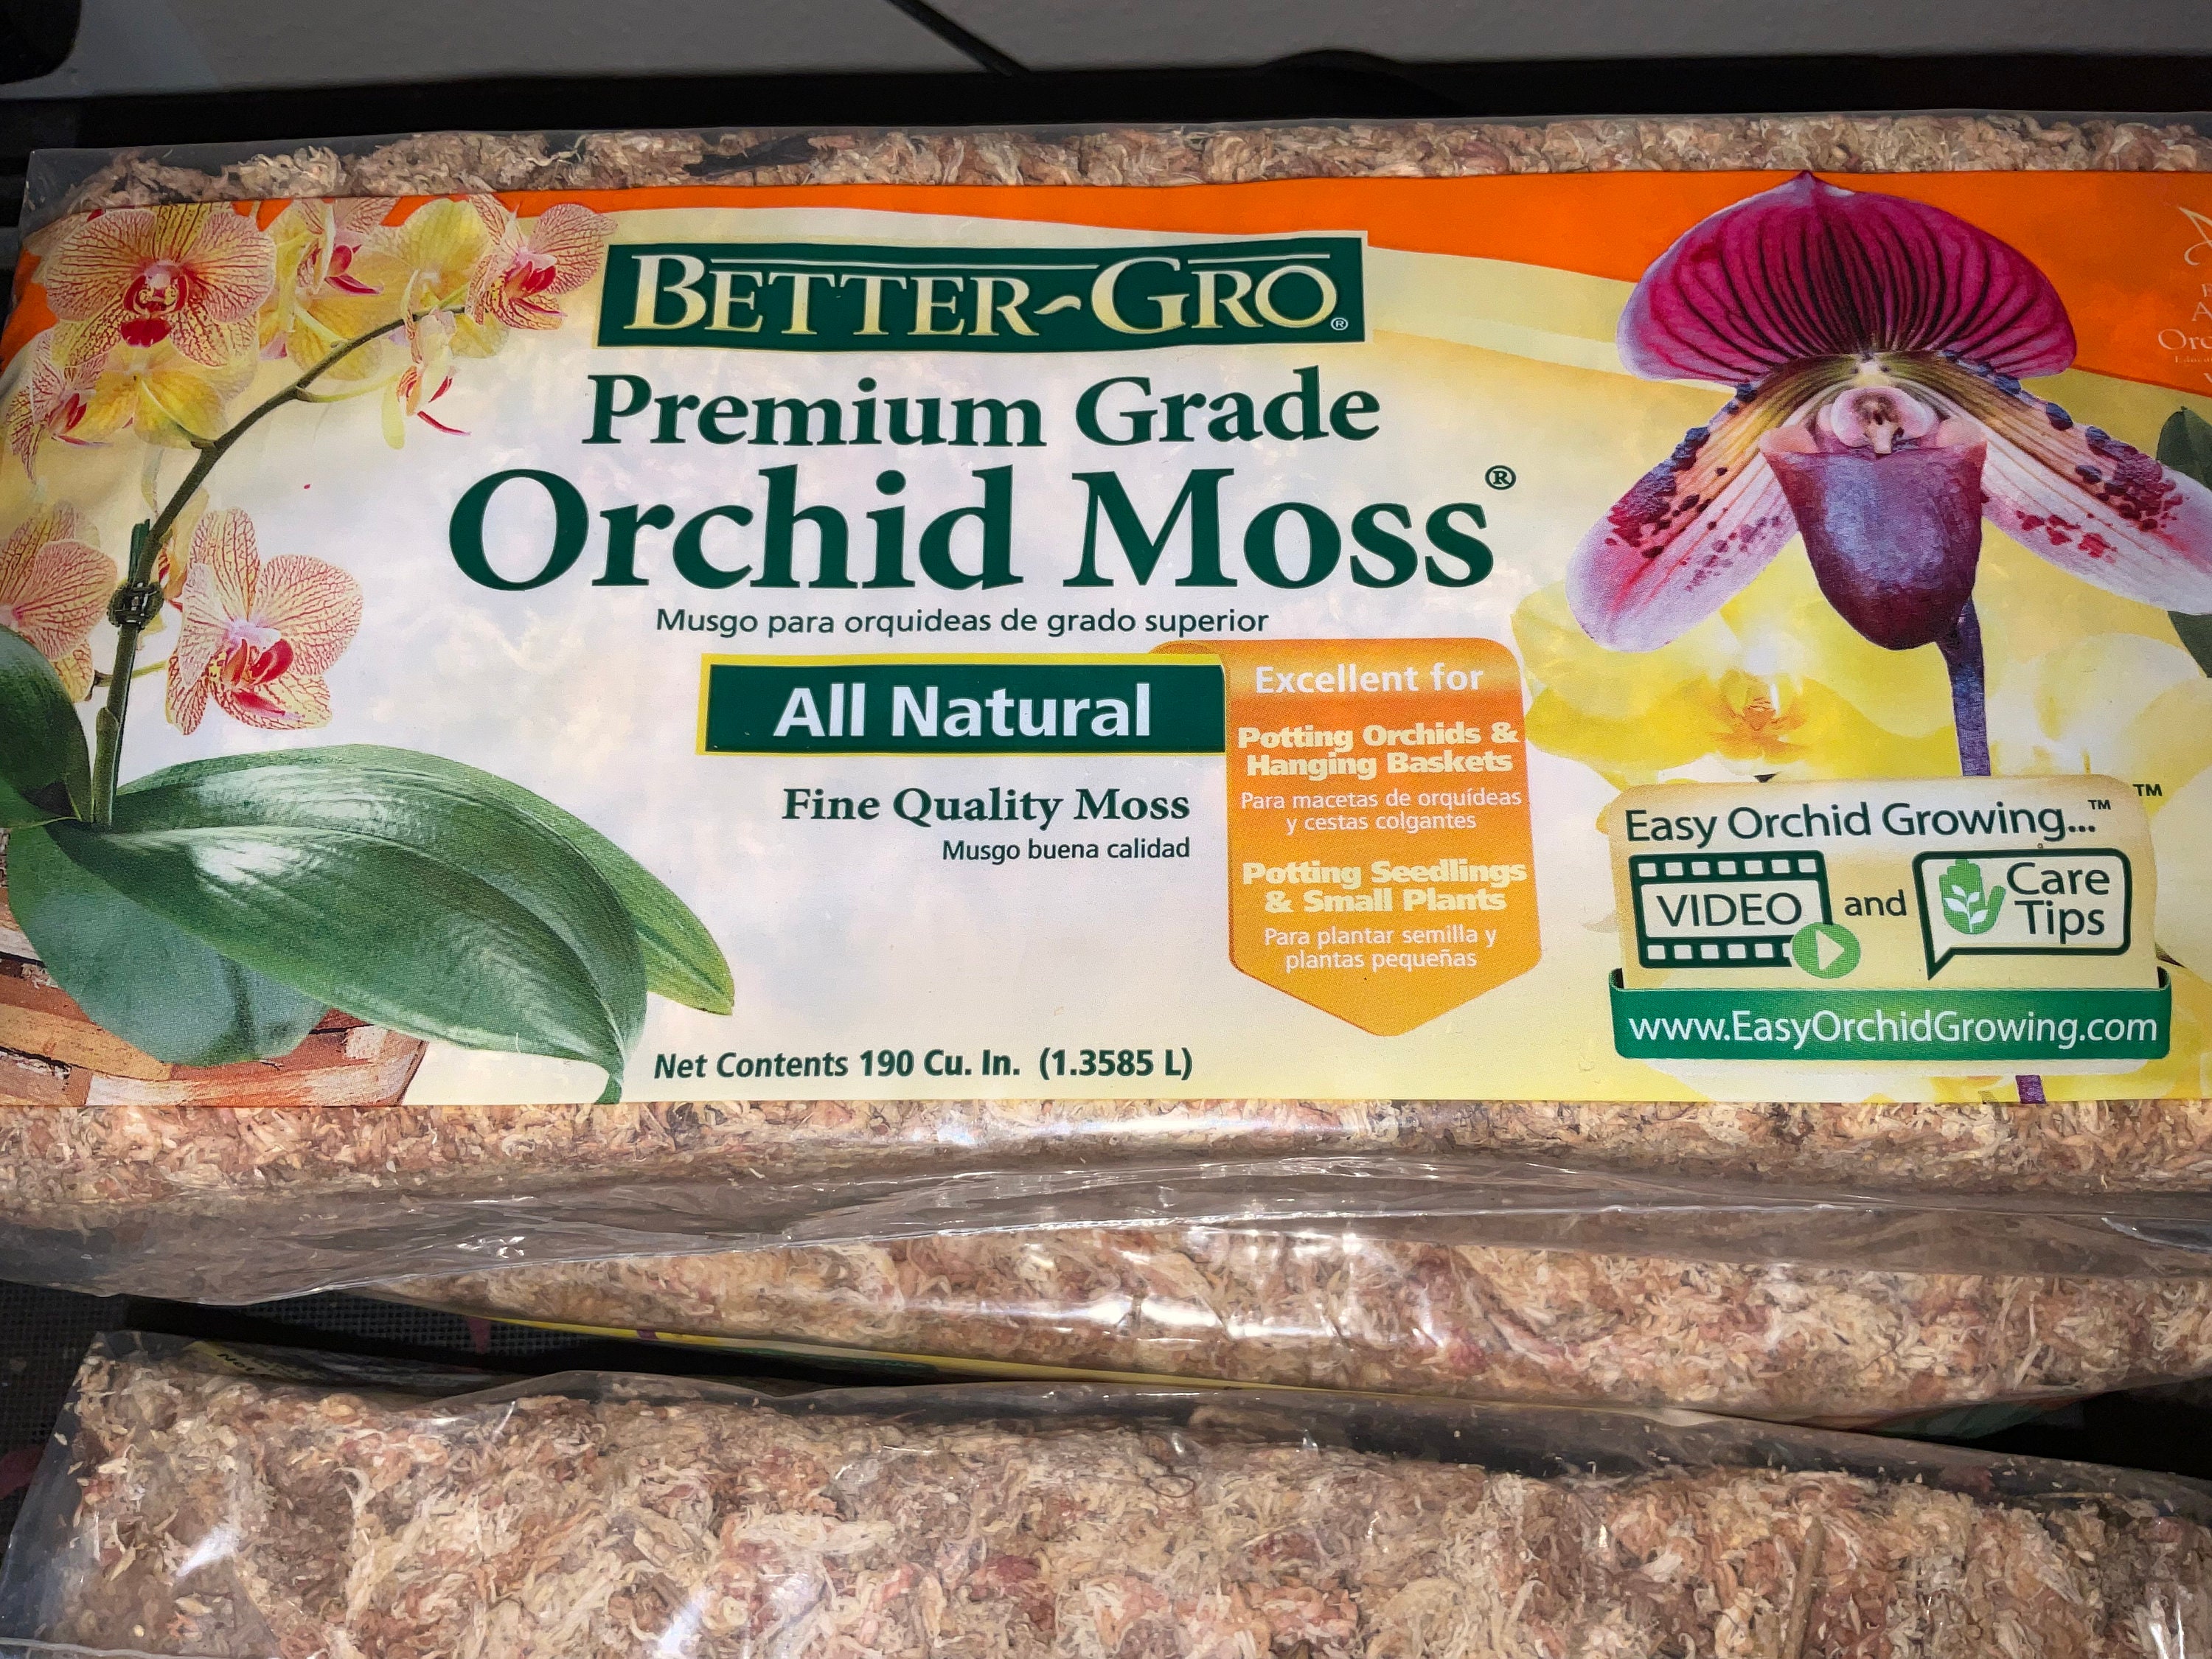 Sphagnum Moss chilean 190cu.in. 1.3585L for Orchids, Aroids, Etc